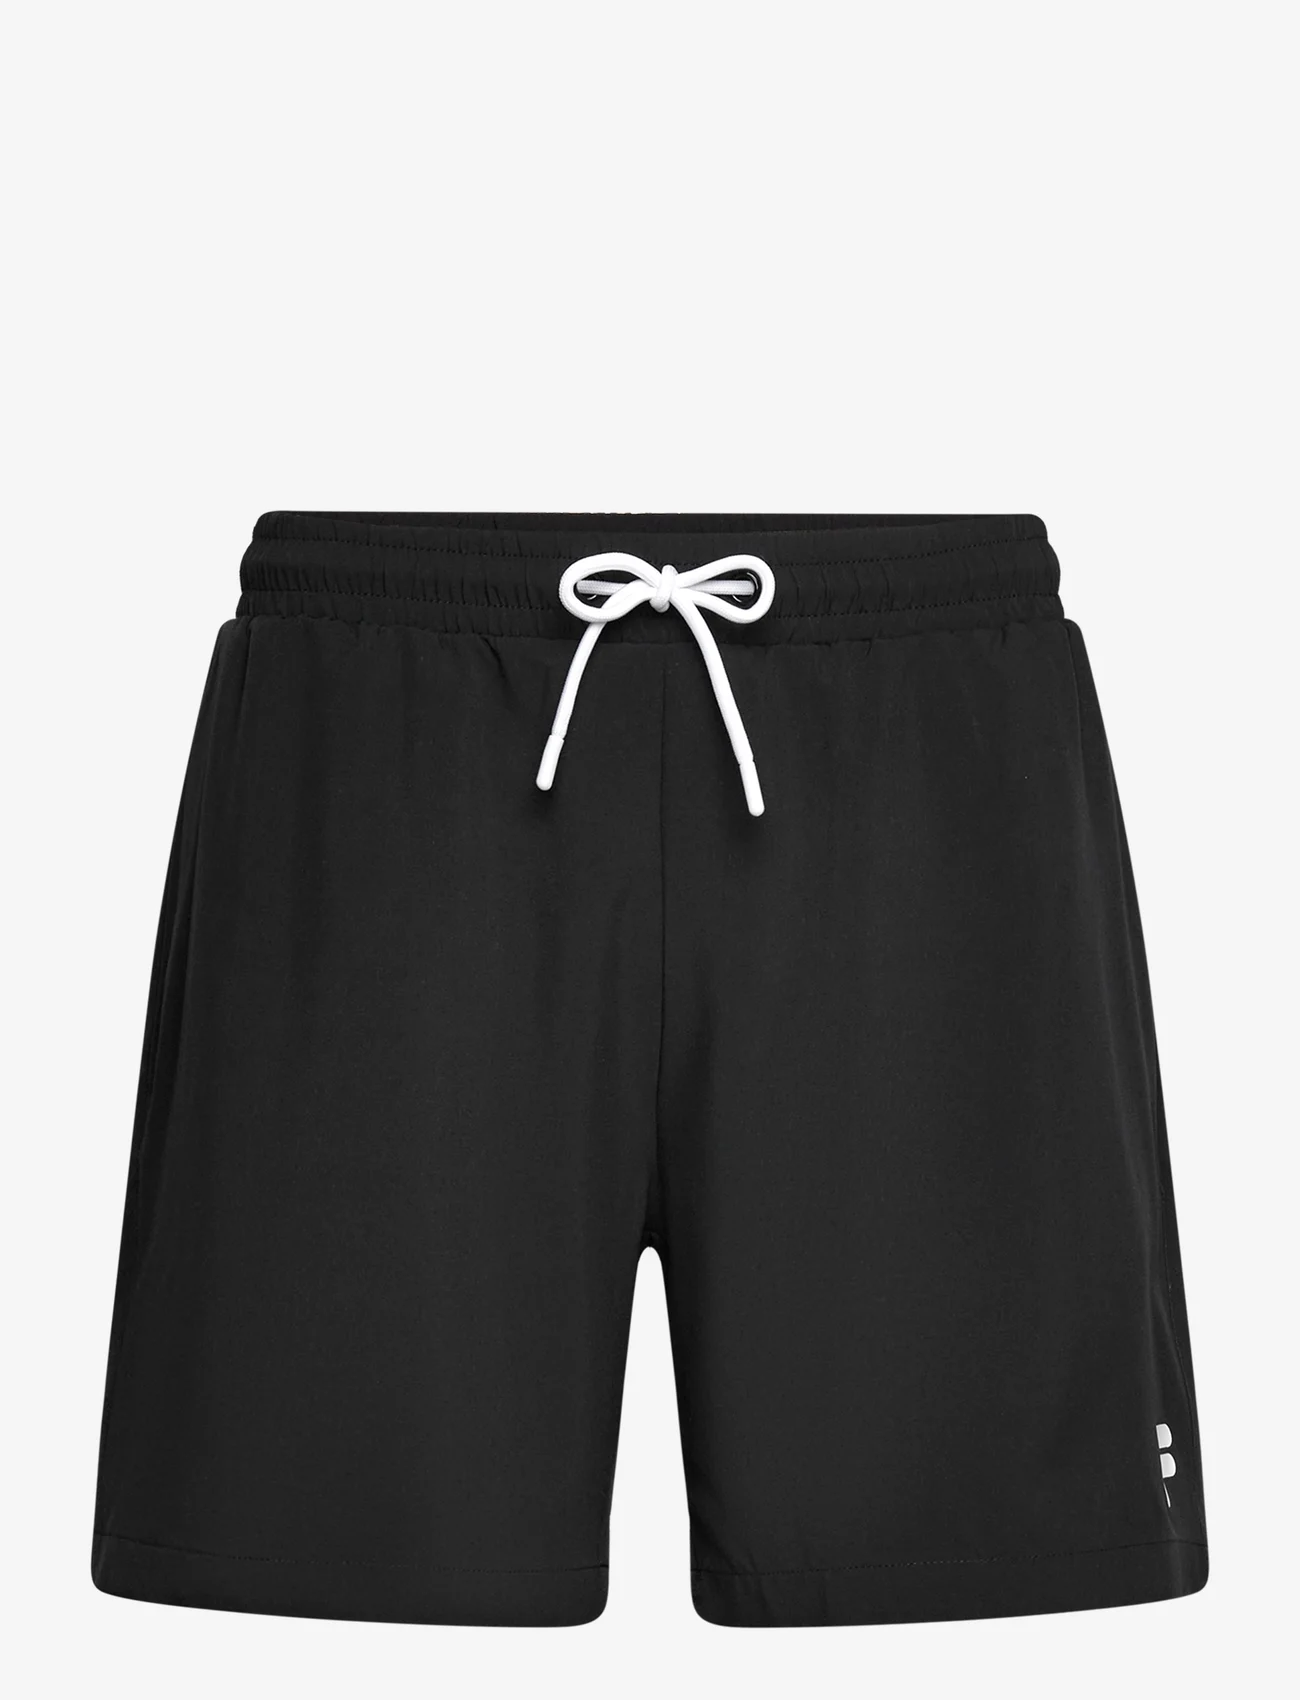 FILA - SEZZE beach shorts - mažiausios kainos - black - 0